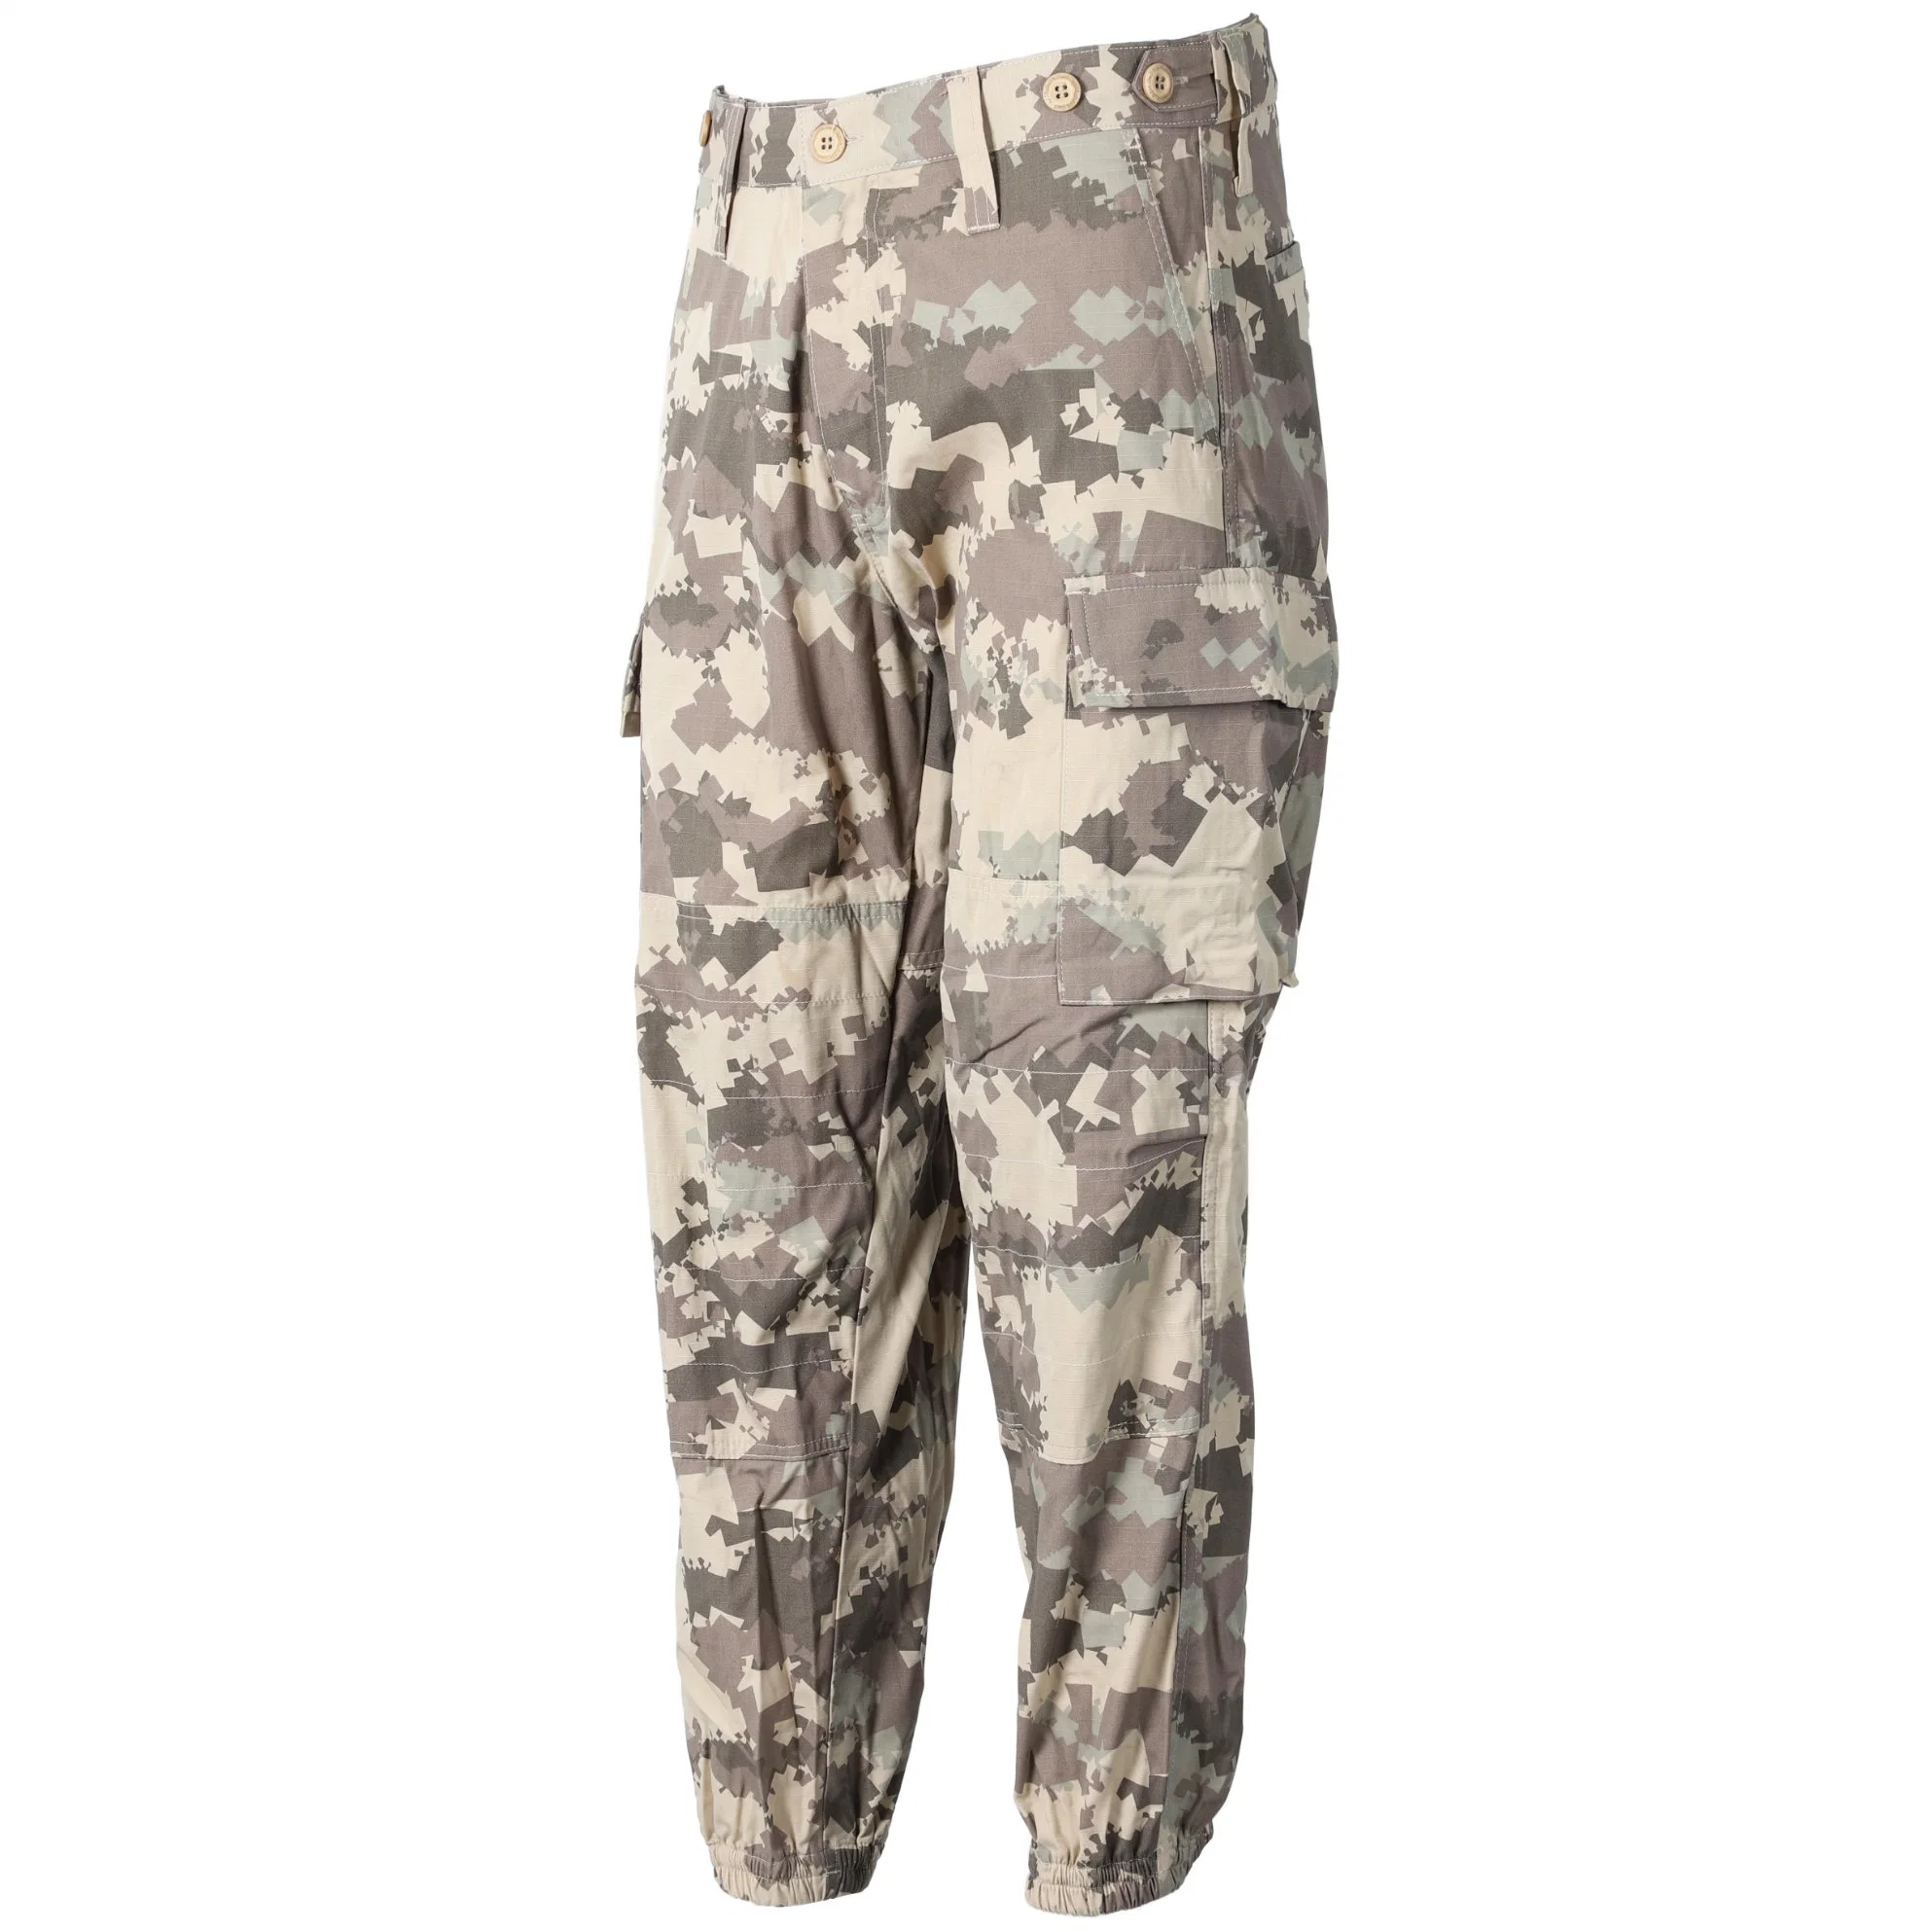 Pantalon cargo BDU en poly/coton rip-stop de style militaire pour hommes.